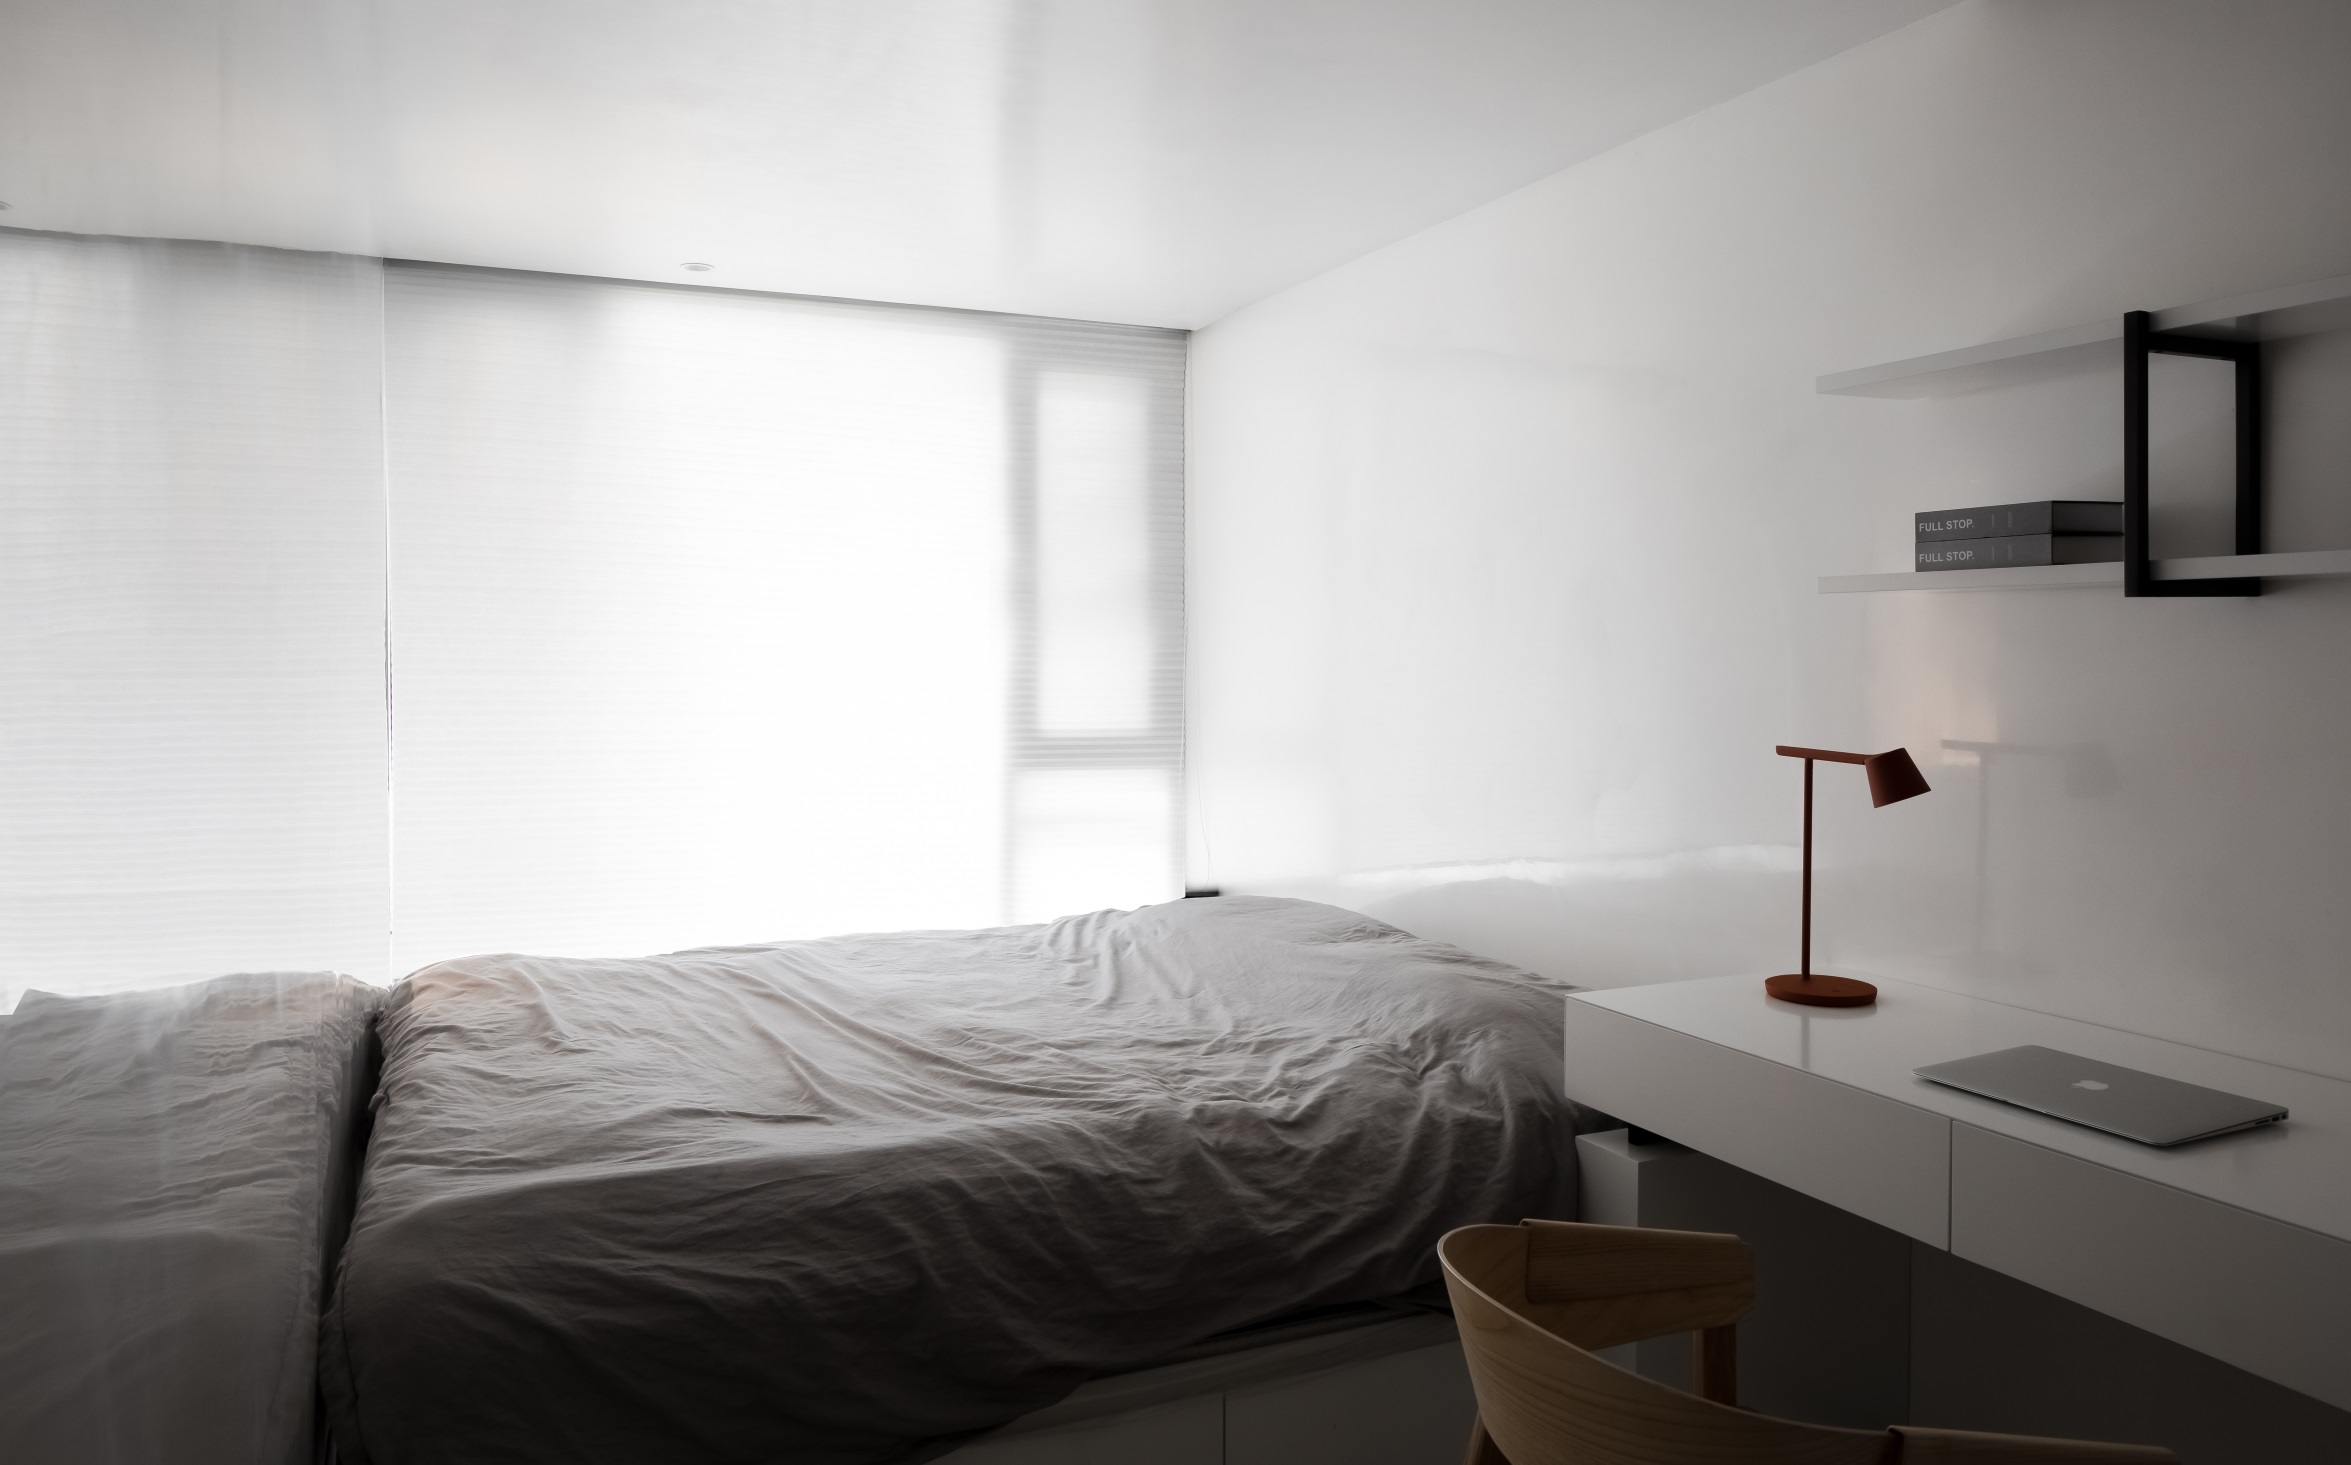 侧卧以白色为主题，榻榻米无床头设计提升了空间利用率，使空间显得舒适而精致。